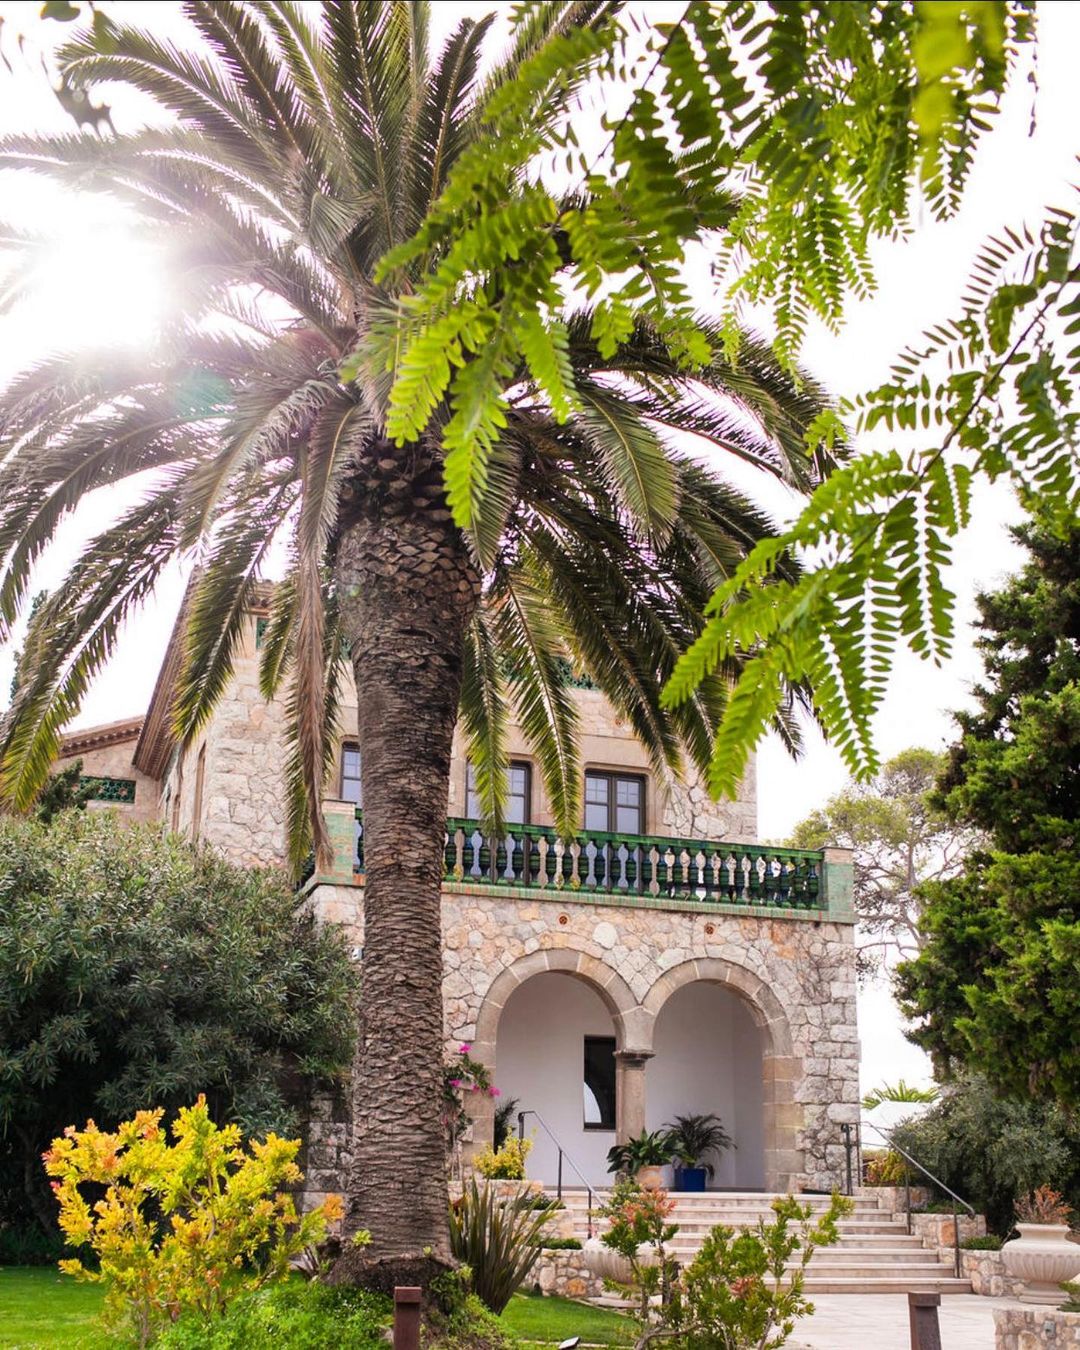 Xalet del Nin, villa mediterránea frente al mar en Vilanova i la Geltrú, perfecta para bodas con encanto histórico y vistas naturales.